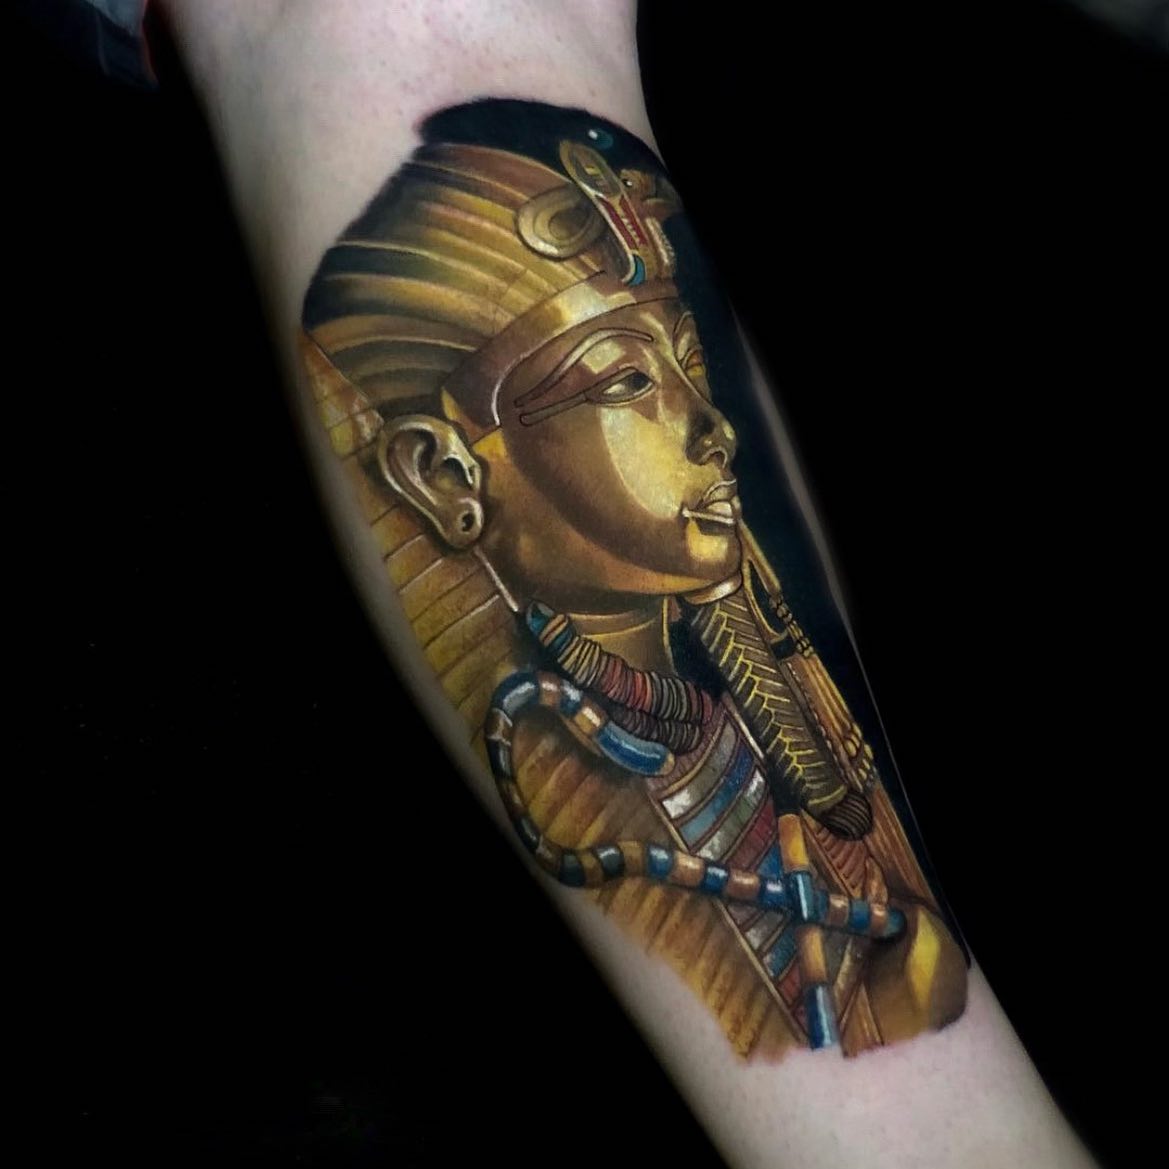 Tattoo uploaded by Tattoodo • Nefertiti tattoo by roxann8roxann  #roxann8roxann #nefertiti #pharaoh #Egyptiantattoos #egyptian #egypt  #ancient #esoteric #history • Tattoodo